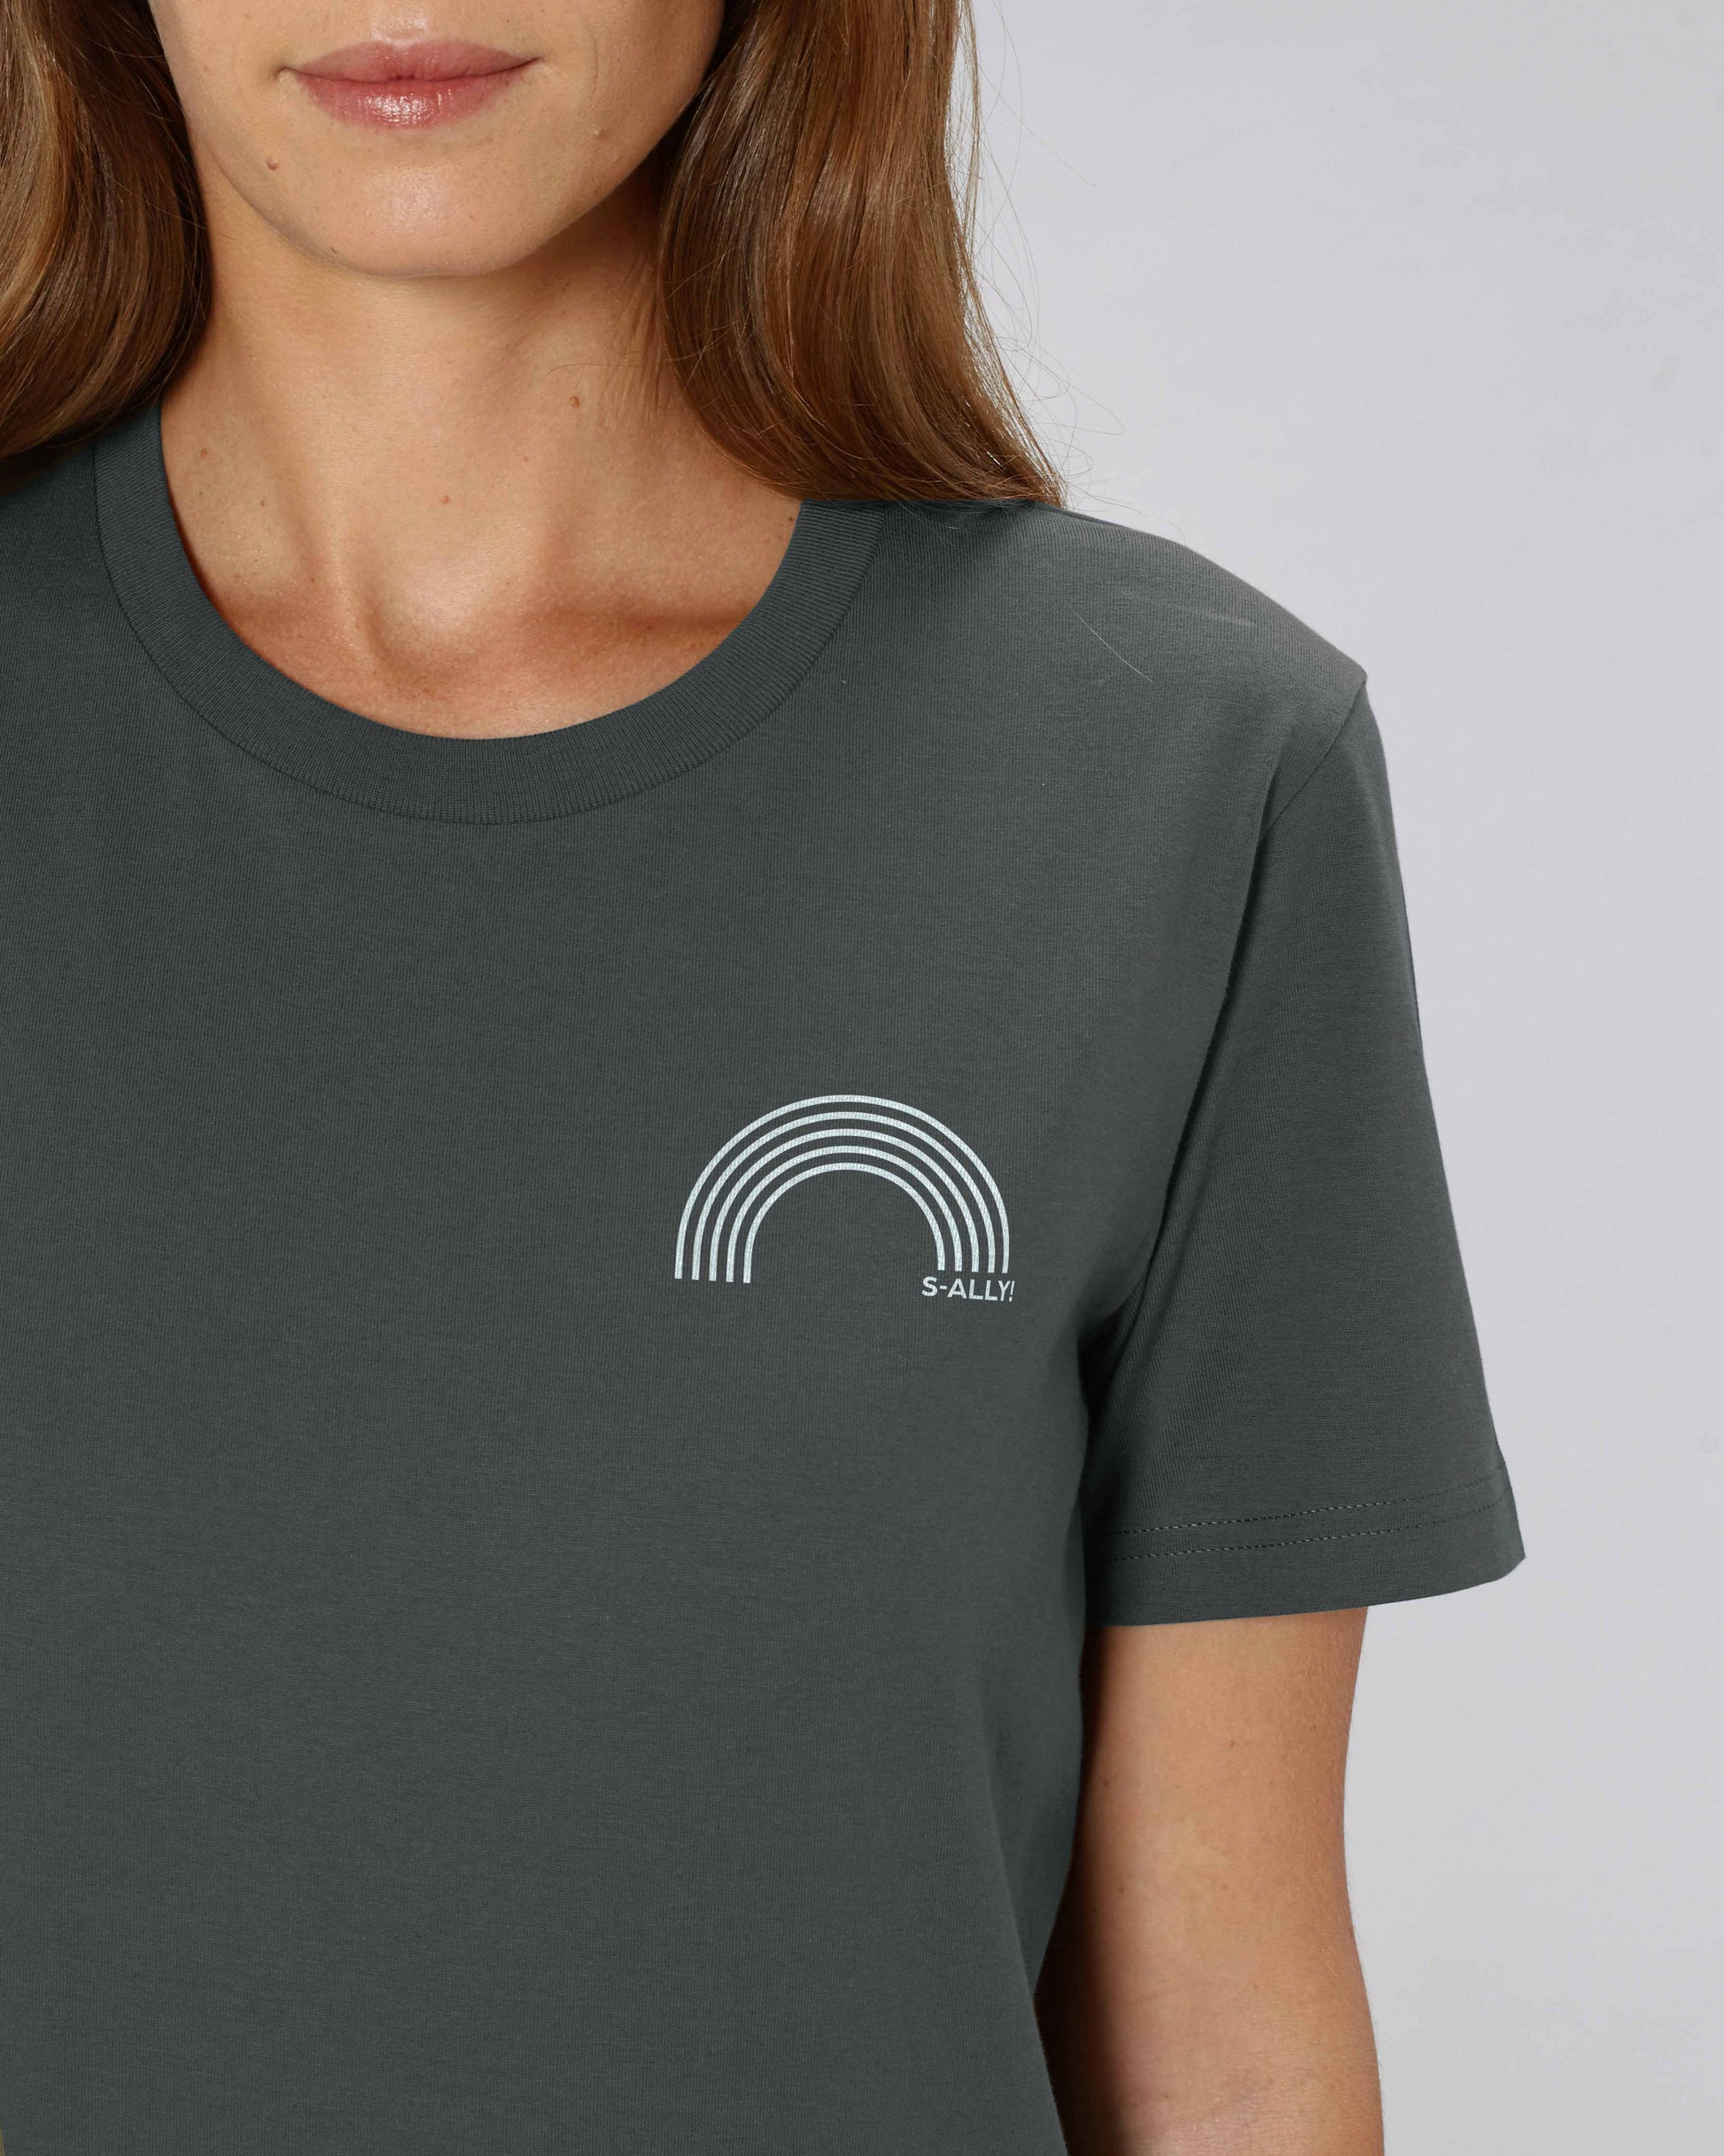 EINHORST® unisex Organic Shirt in "Anthracite" mit dem Motiv "s-ally Regenbogen" in der Kombination weißer Regenbogen mit weißer Schrift, Bild von weiblicher Person mit Shirt